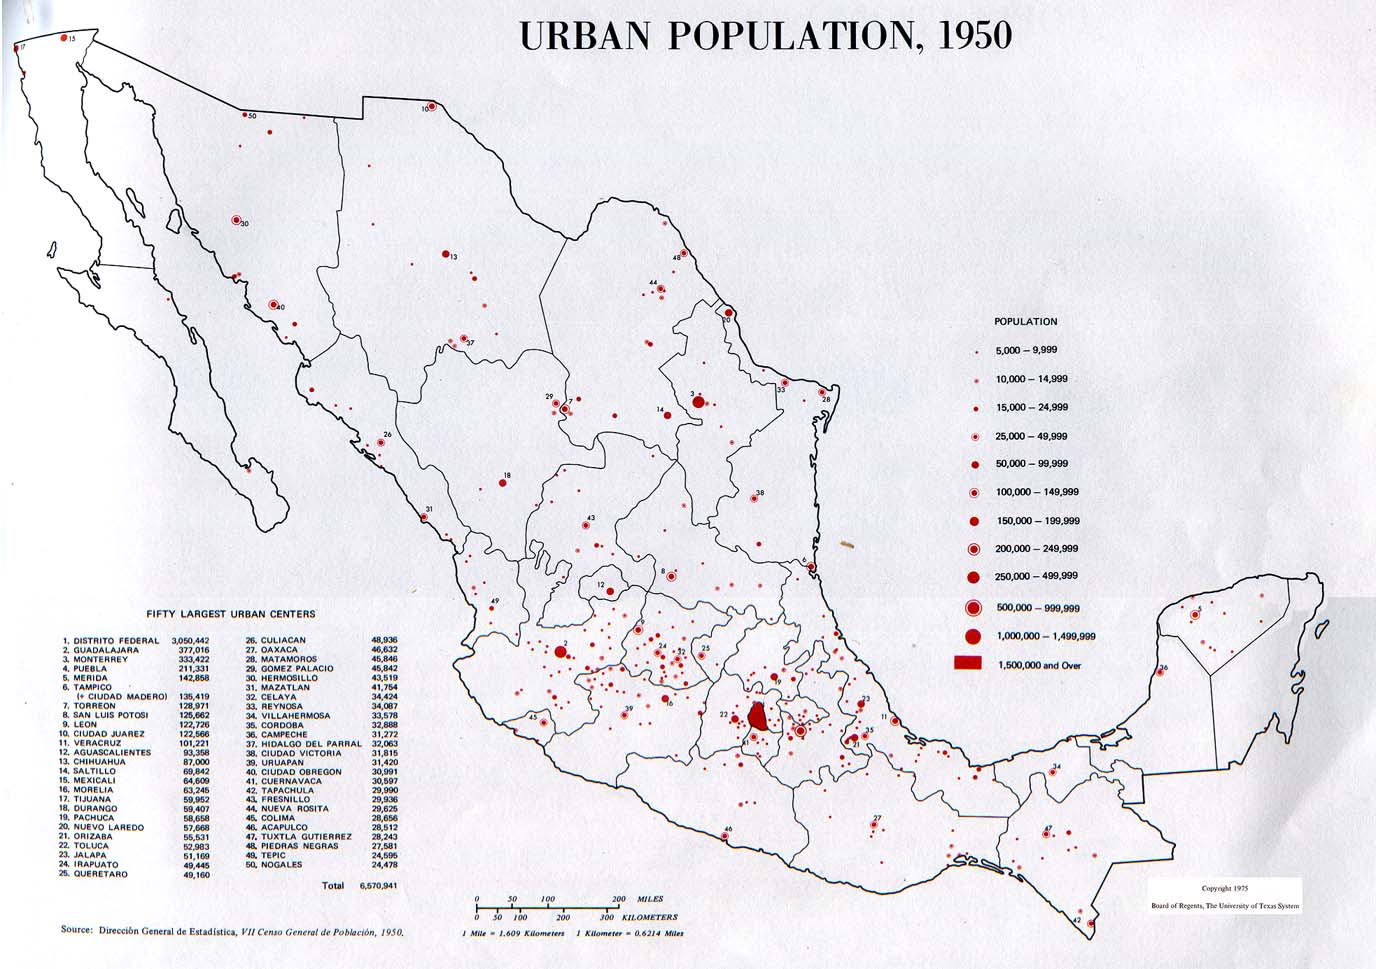 Ciudad de mexico population